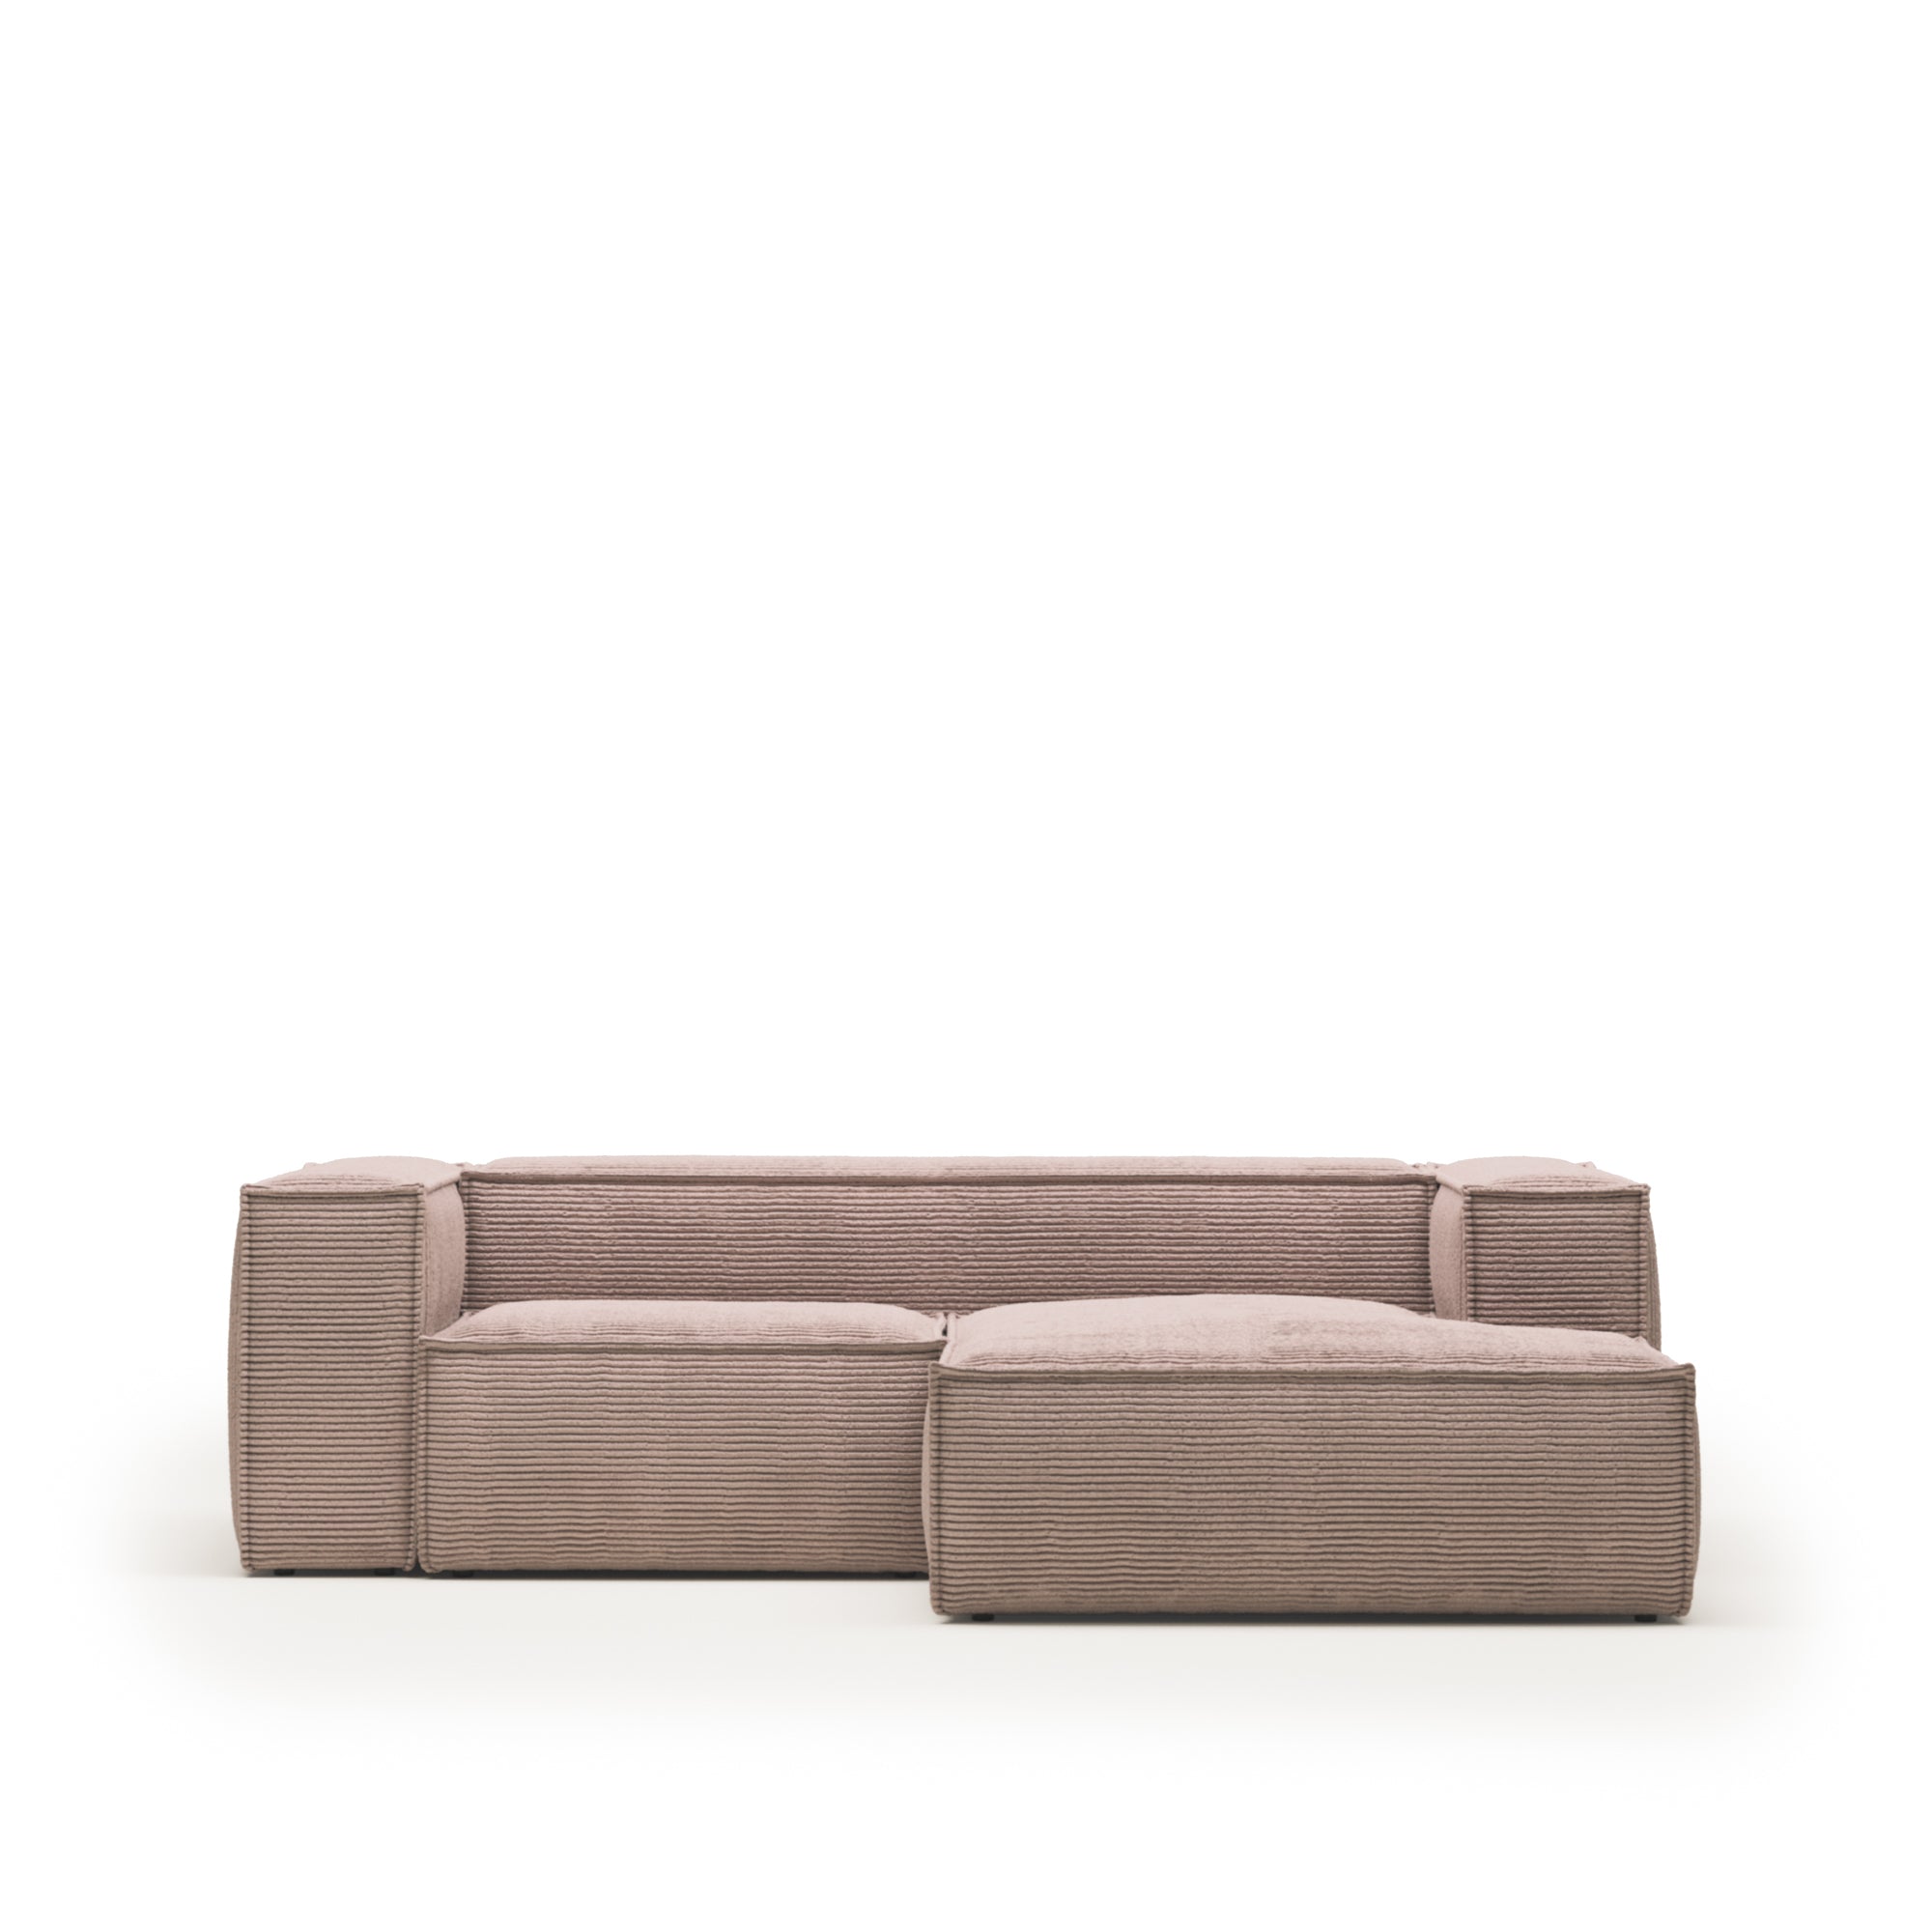 Blok 2 személyes kanapé jobb oldali fekvőfotellel, rózsaszín, széles varrású kordbársonyból, 240 cm